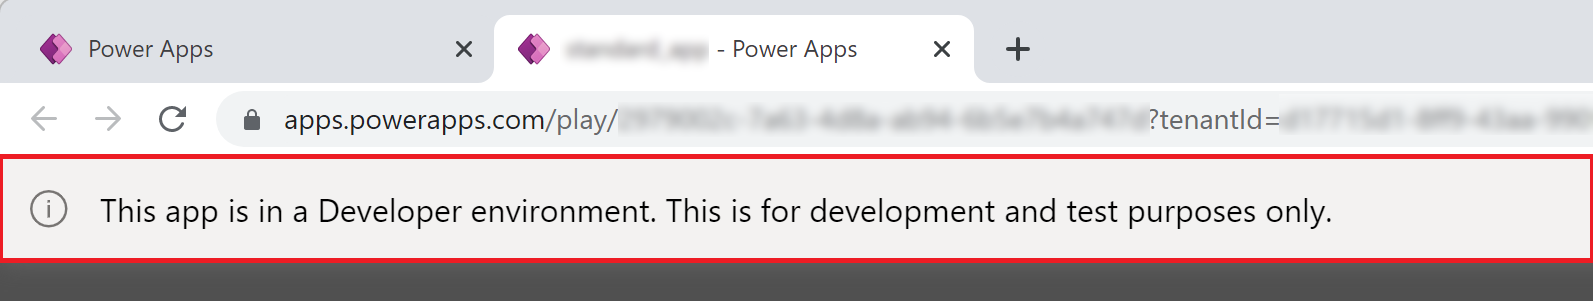 Power Apps Banner aplikace vývojářského prostředí.